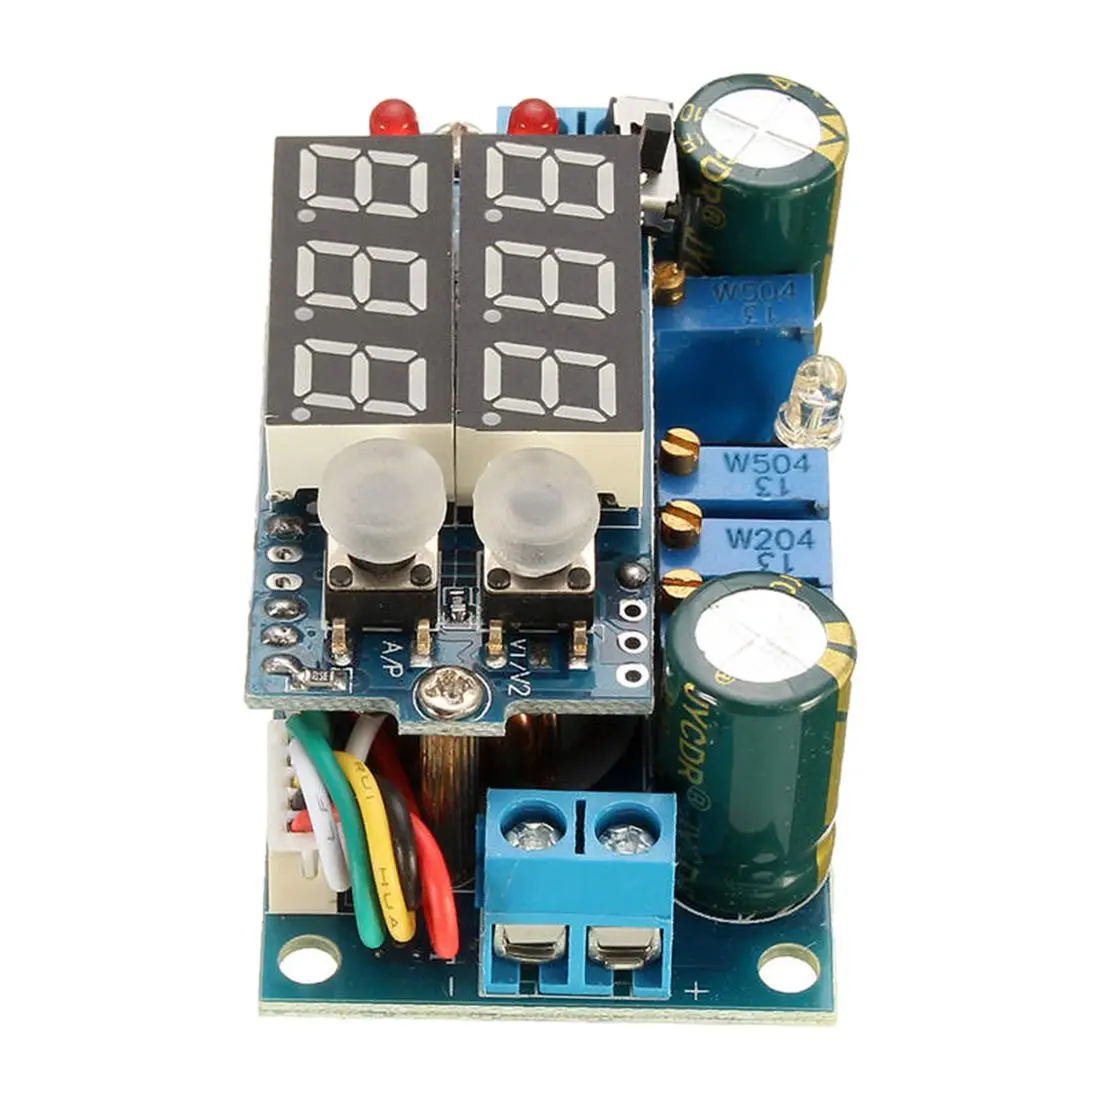 5A MPPT контроллер солнечной панели DC-DC понижающий CC/CV модуль зарядки дисплей светодиодный синий выход панели солнечных батарей PV регулятор